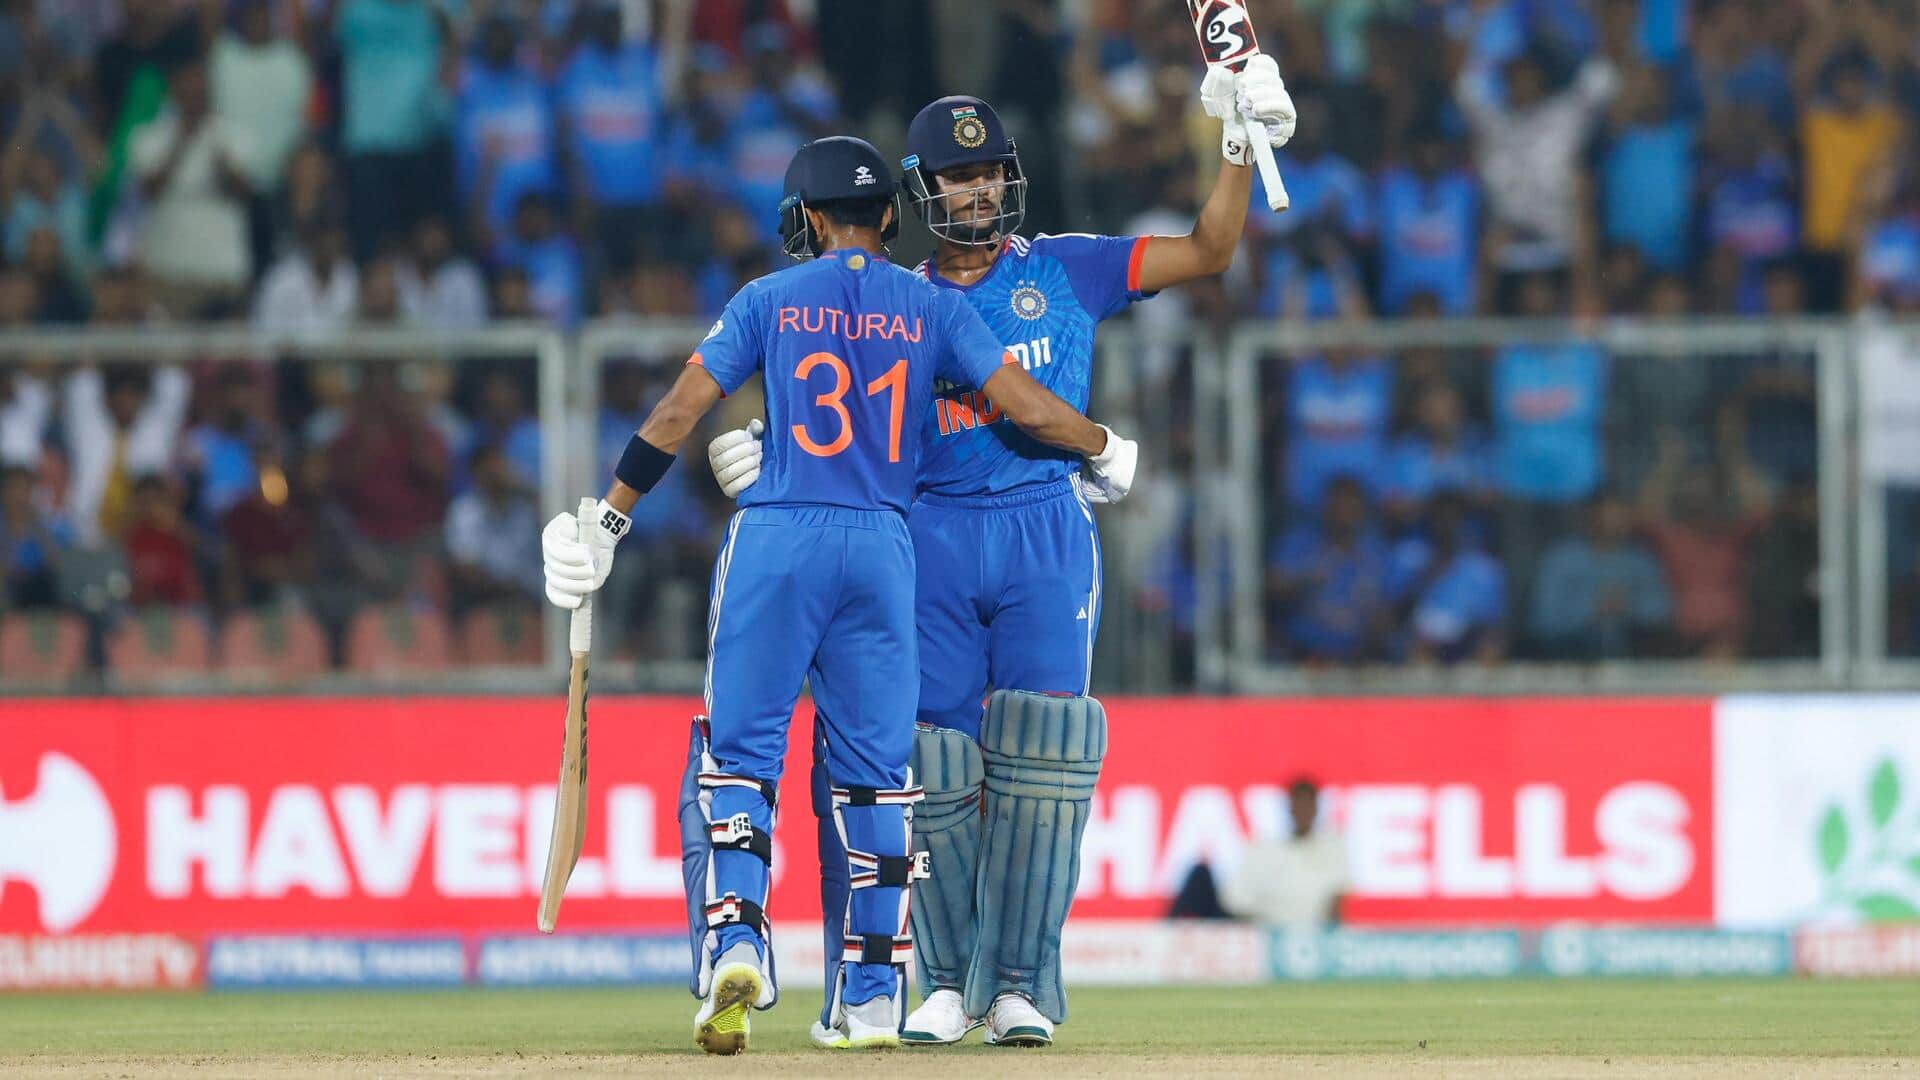 भारतीय टीम ने दूसरे टी-20 में पावरप्ले में बनाए 77 रन, यह खास रिकॉर्ड बनाया